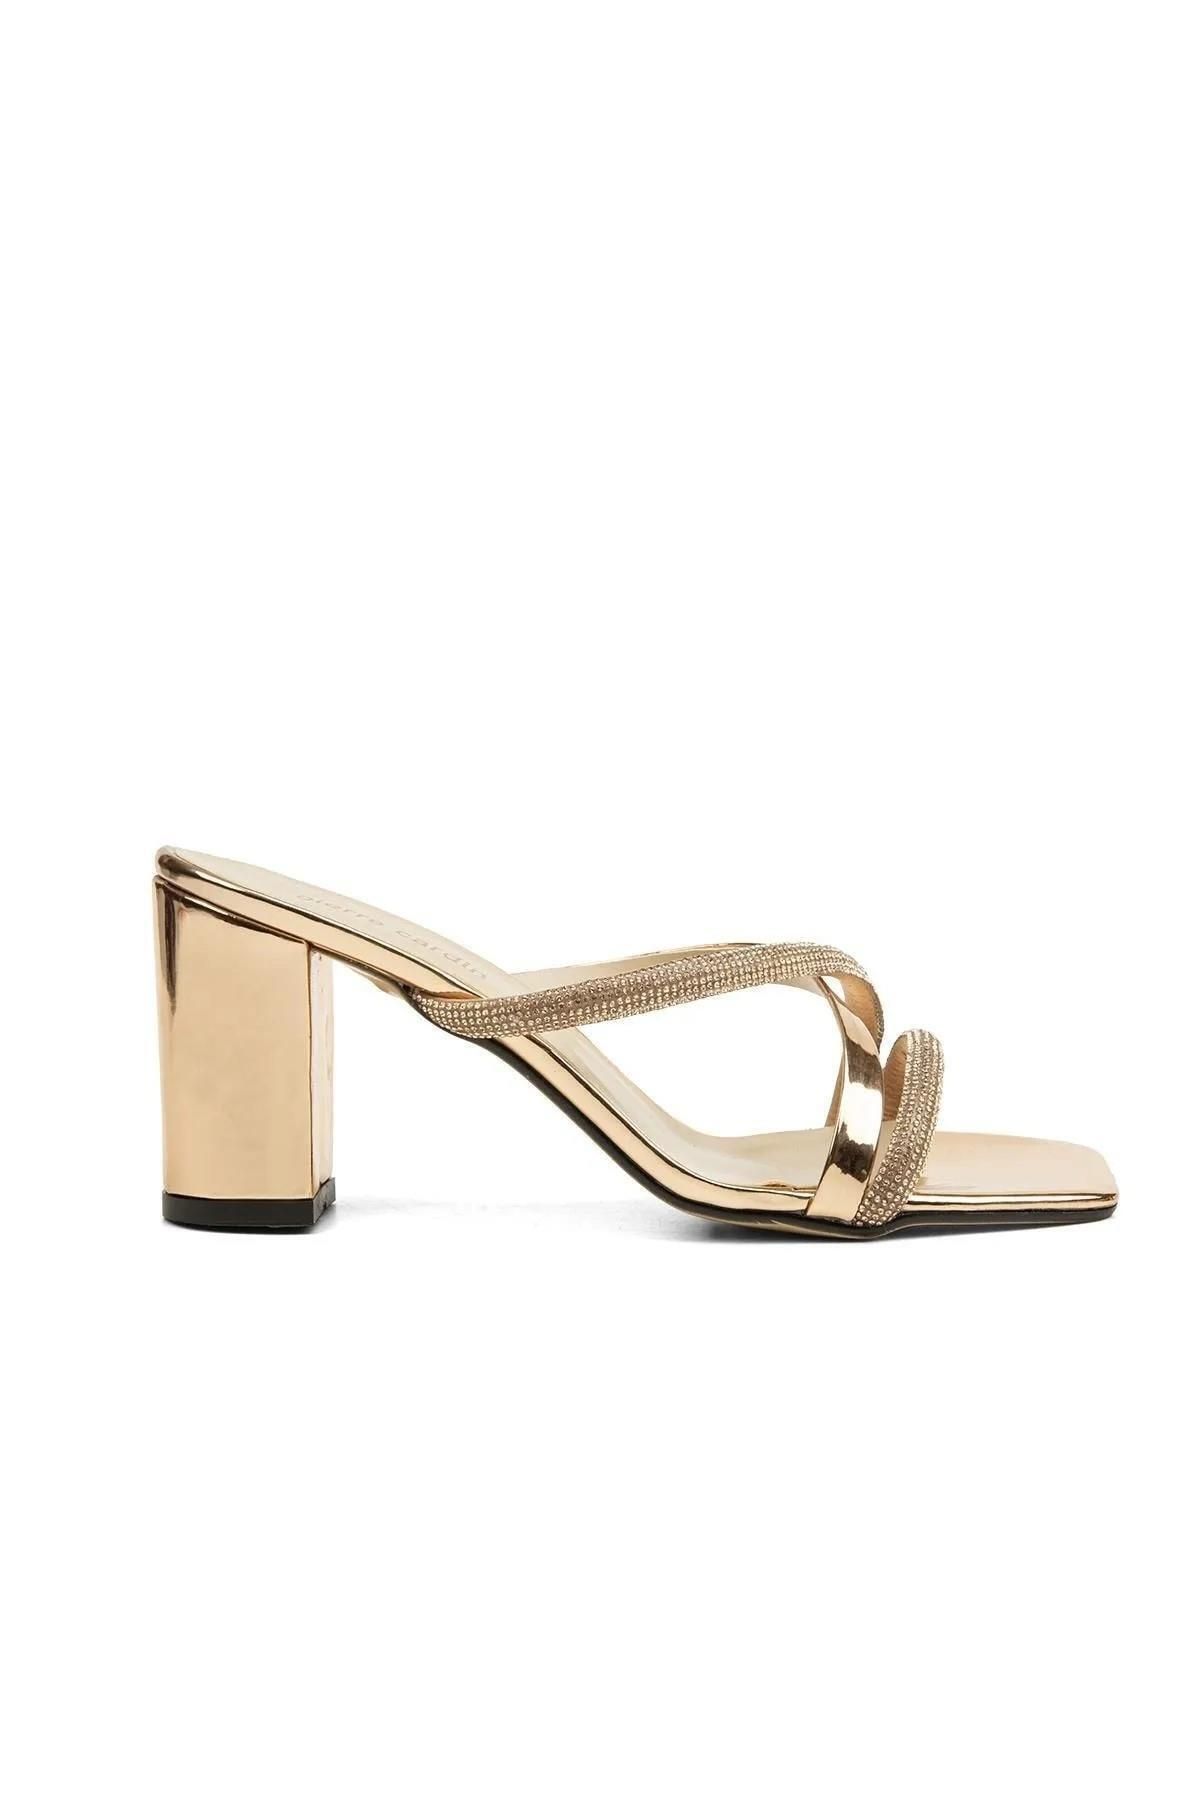 Pierre Cardin PC-52217 Altın Kadın Topuklu Ayakkabı